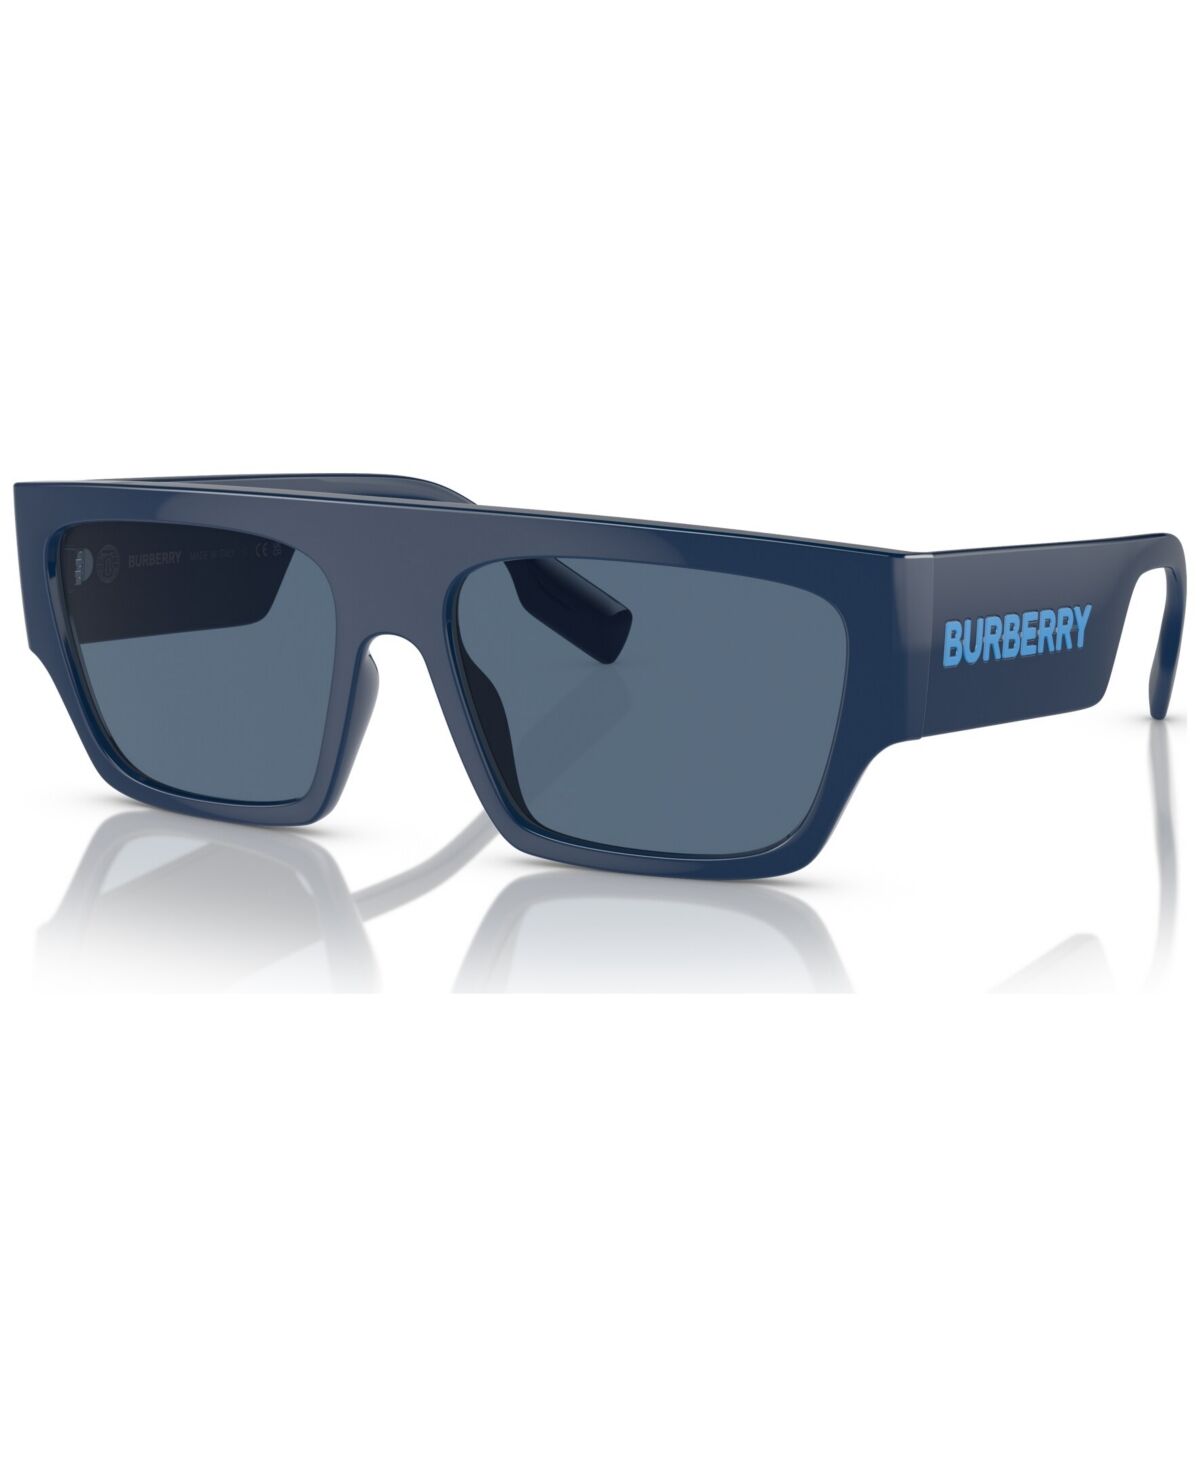 Burberry Men's Sunglasses, Micah - Blue